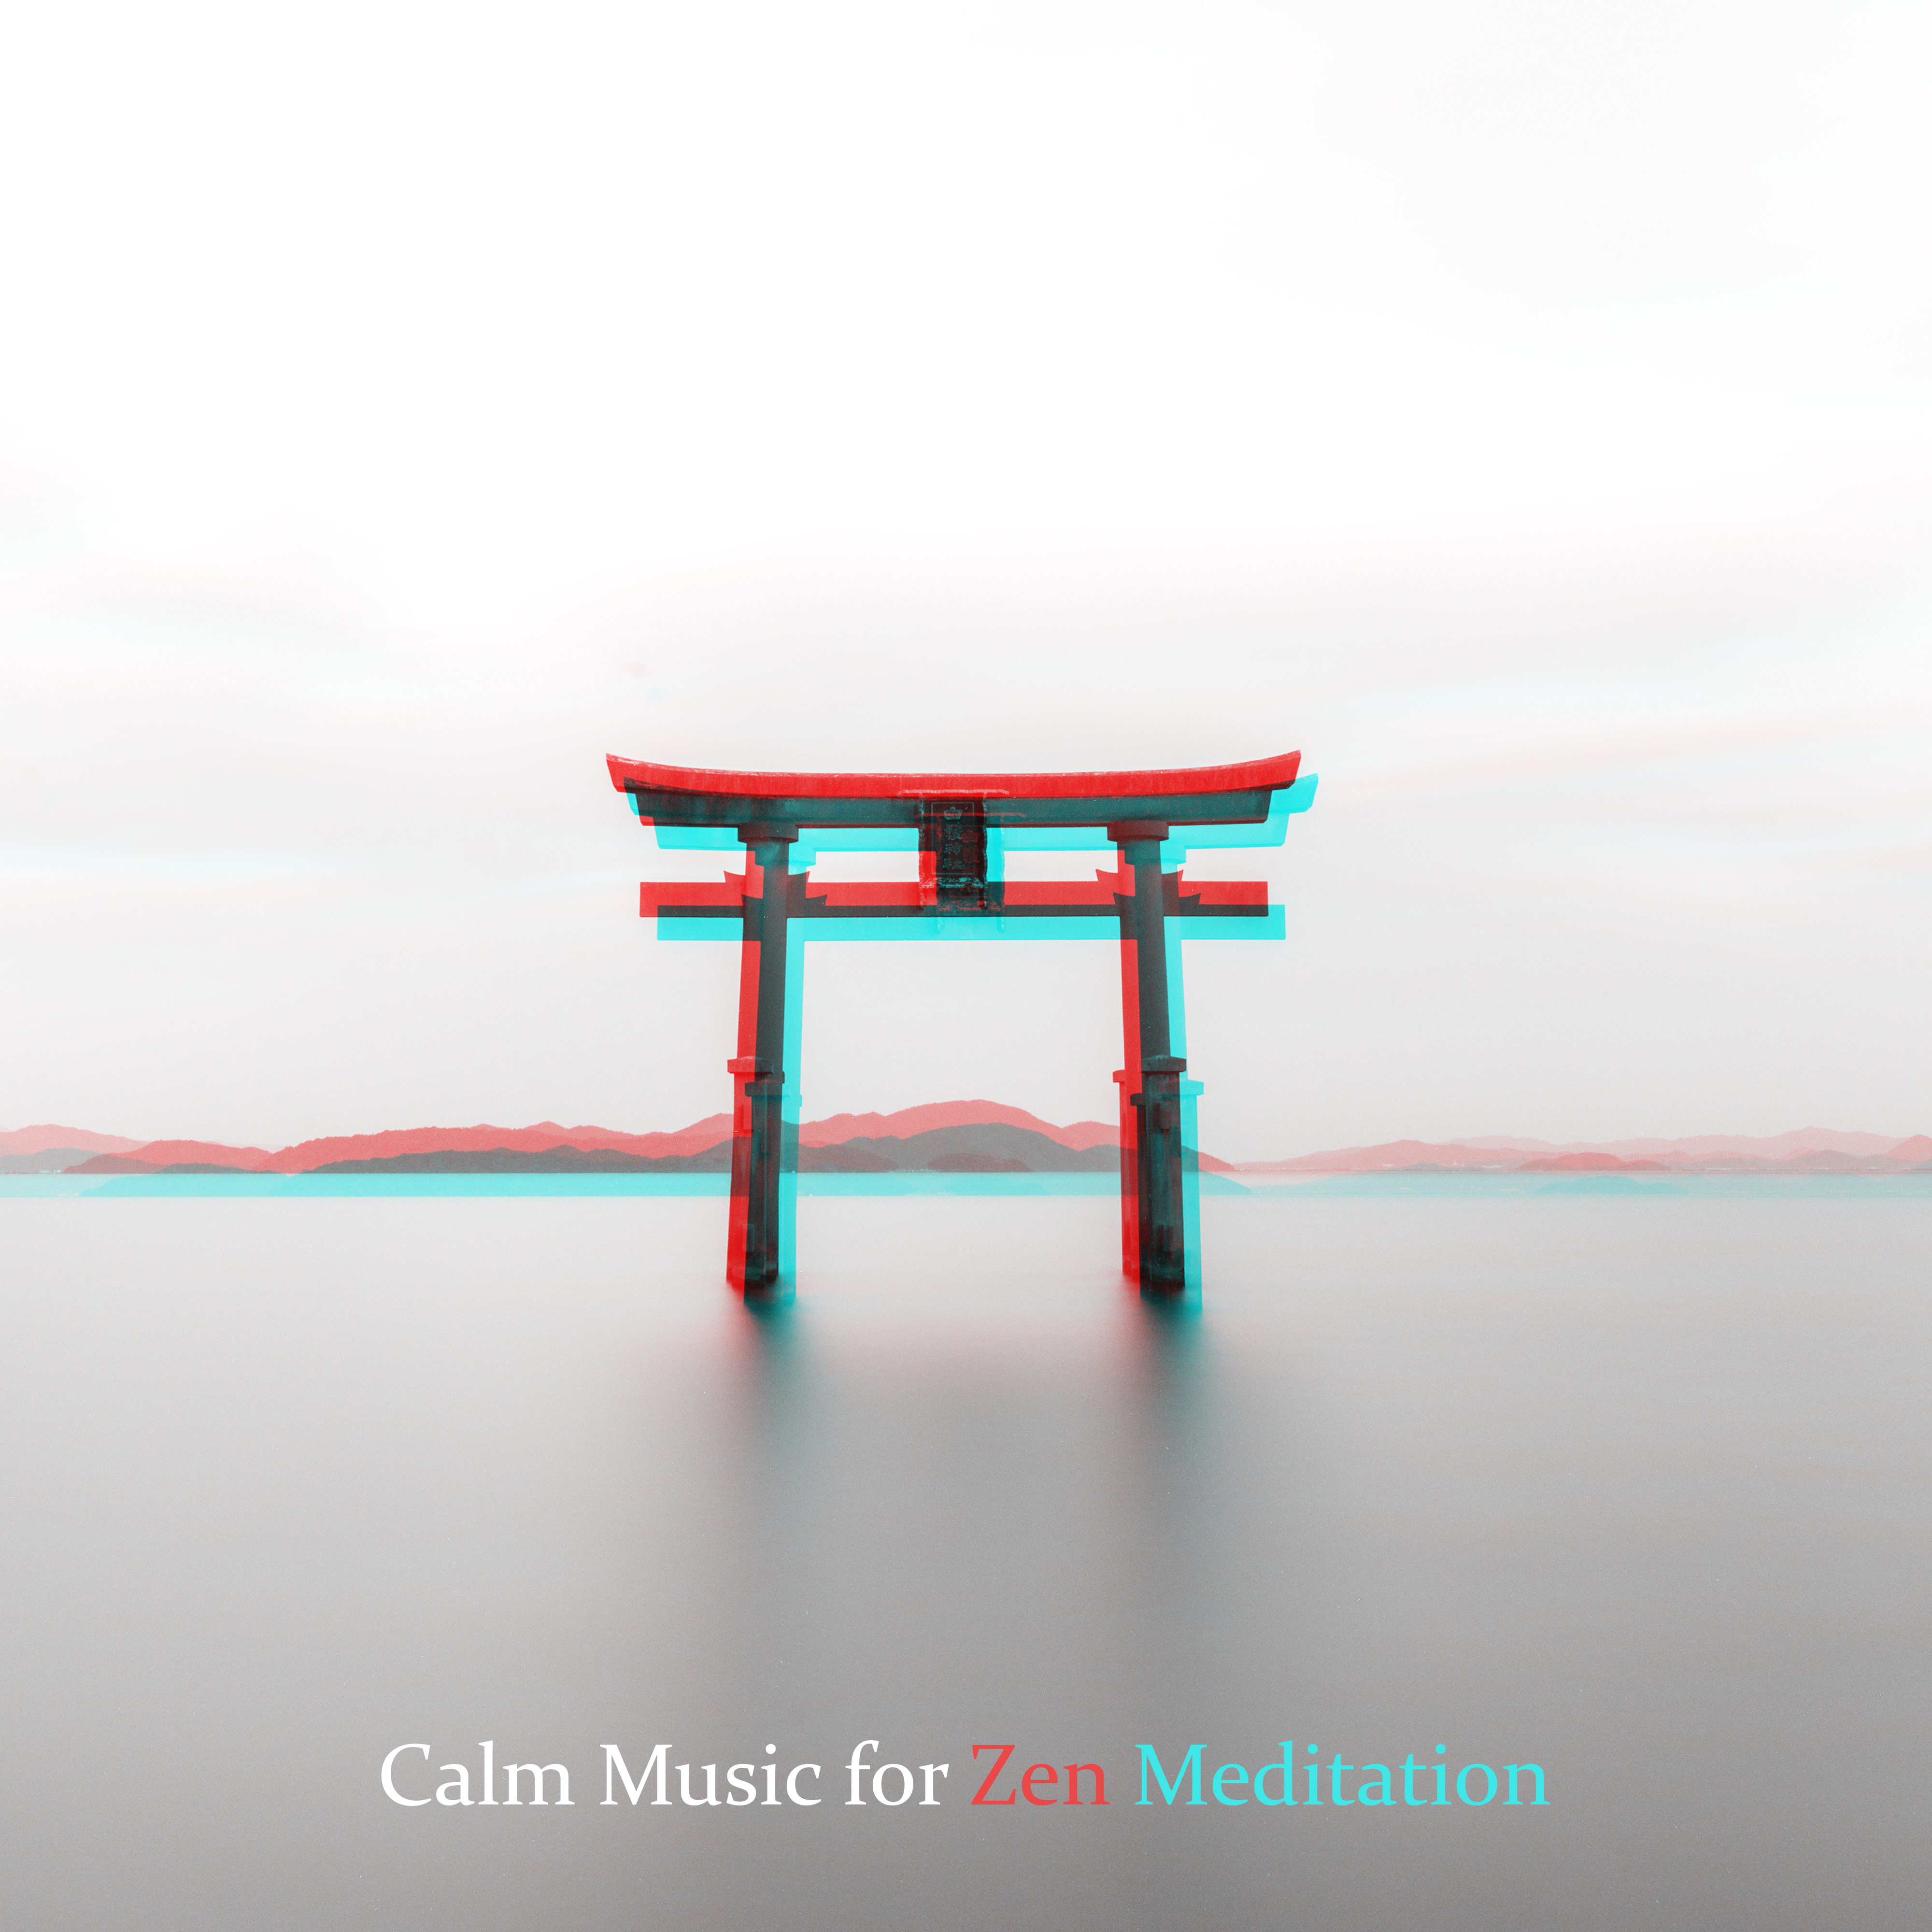 Calm Music for Zen Meditation